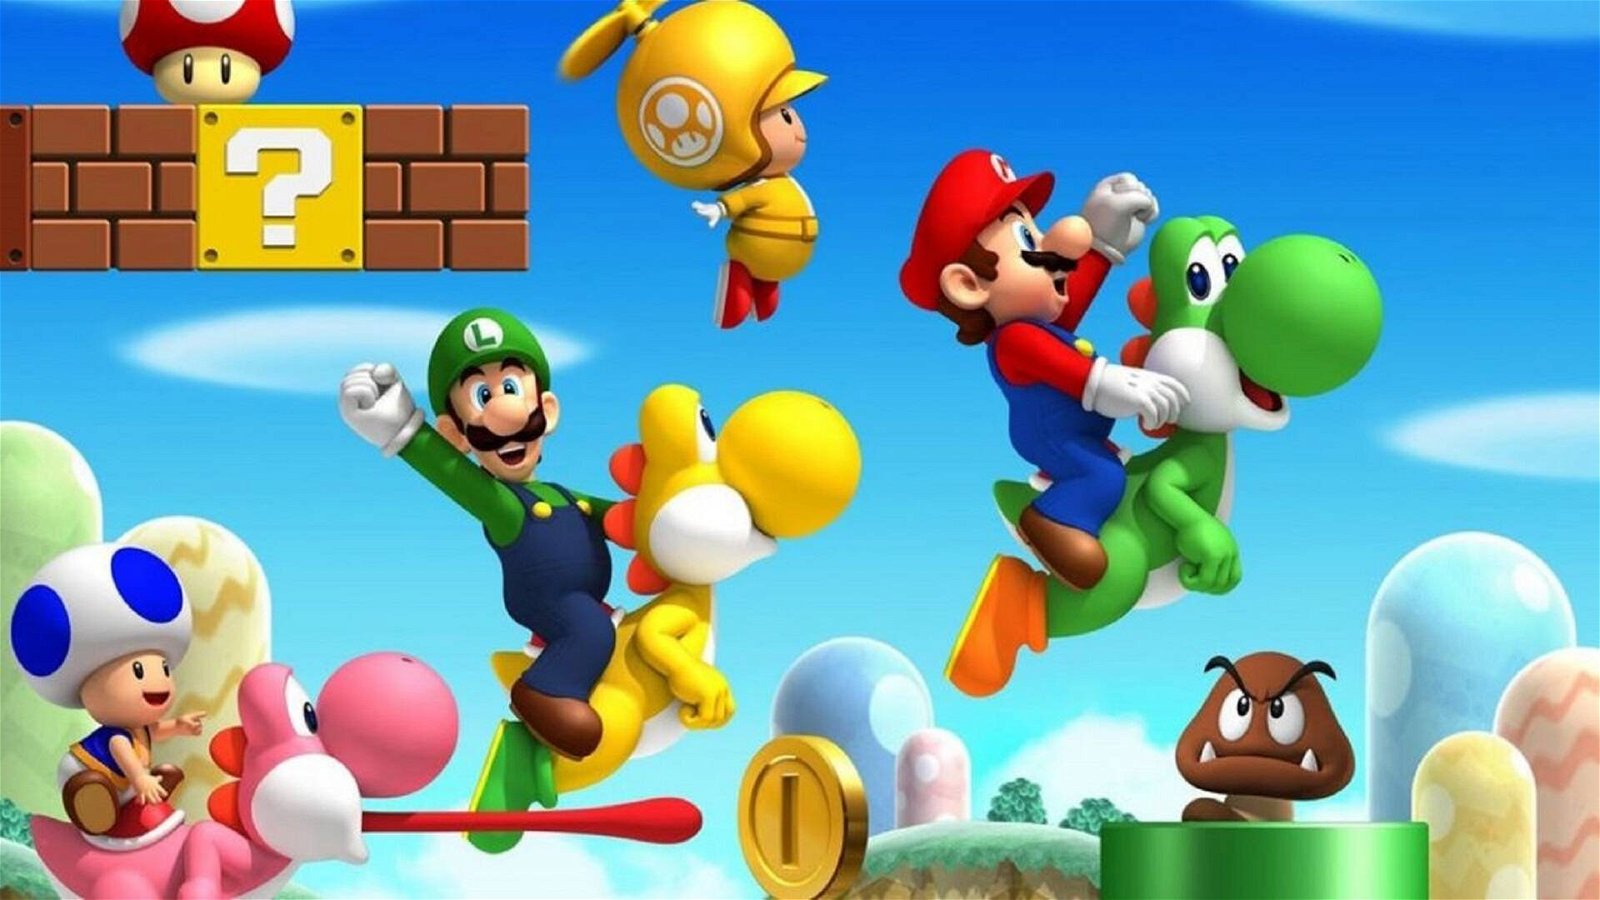 Immagine di Super Mario: 7 imperdibili gadget da acquistare al Mario Day